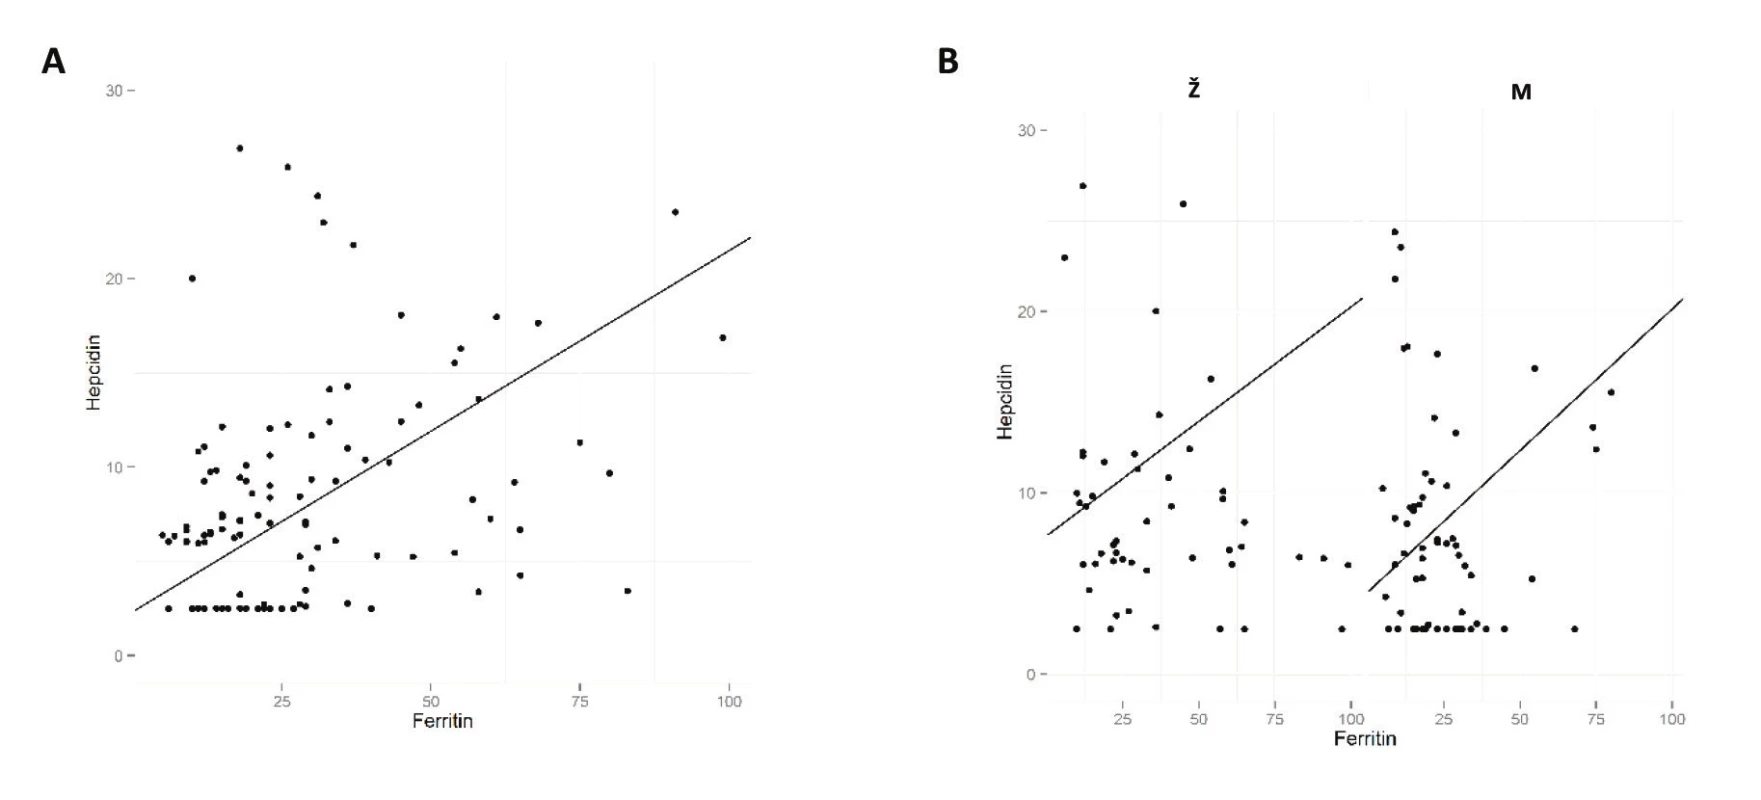 Graf korelace hladin hepcidinu a feritinu
Hladina hepcidinu vykazuje pozitivní korelaci s hladinou feritinu u všech dárců (A) i u obou pohlaví odděleně (B). M = muži; Ž = ženy